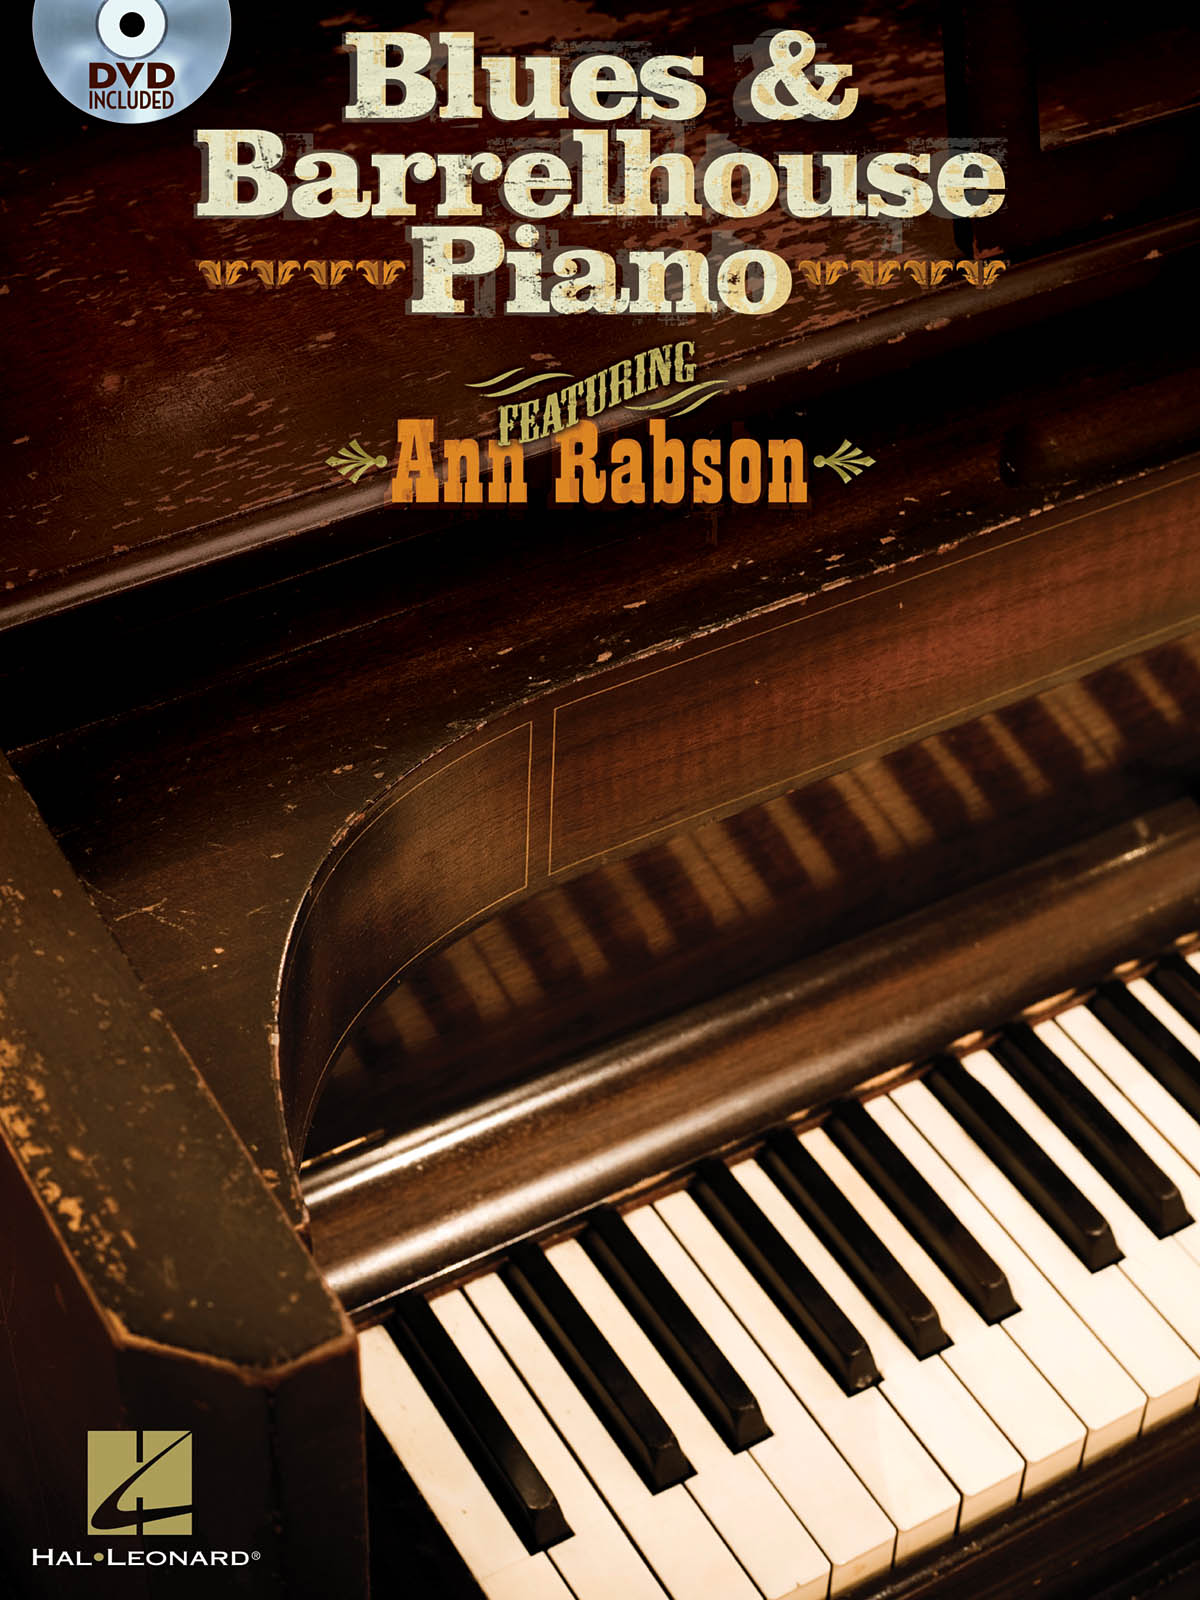 Blues & Barrelhouse Piano Keyboard